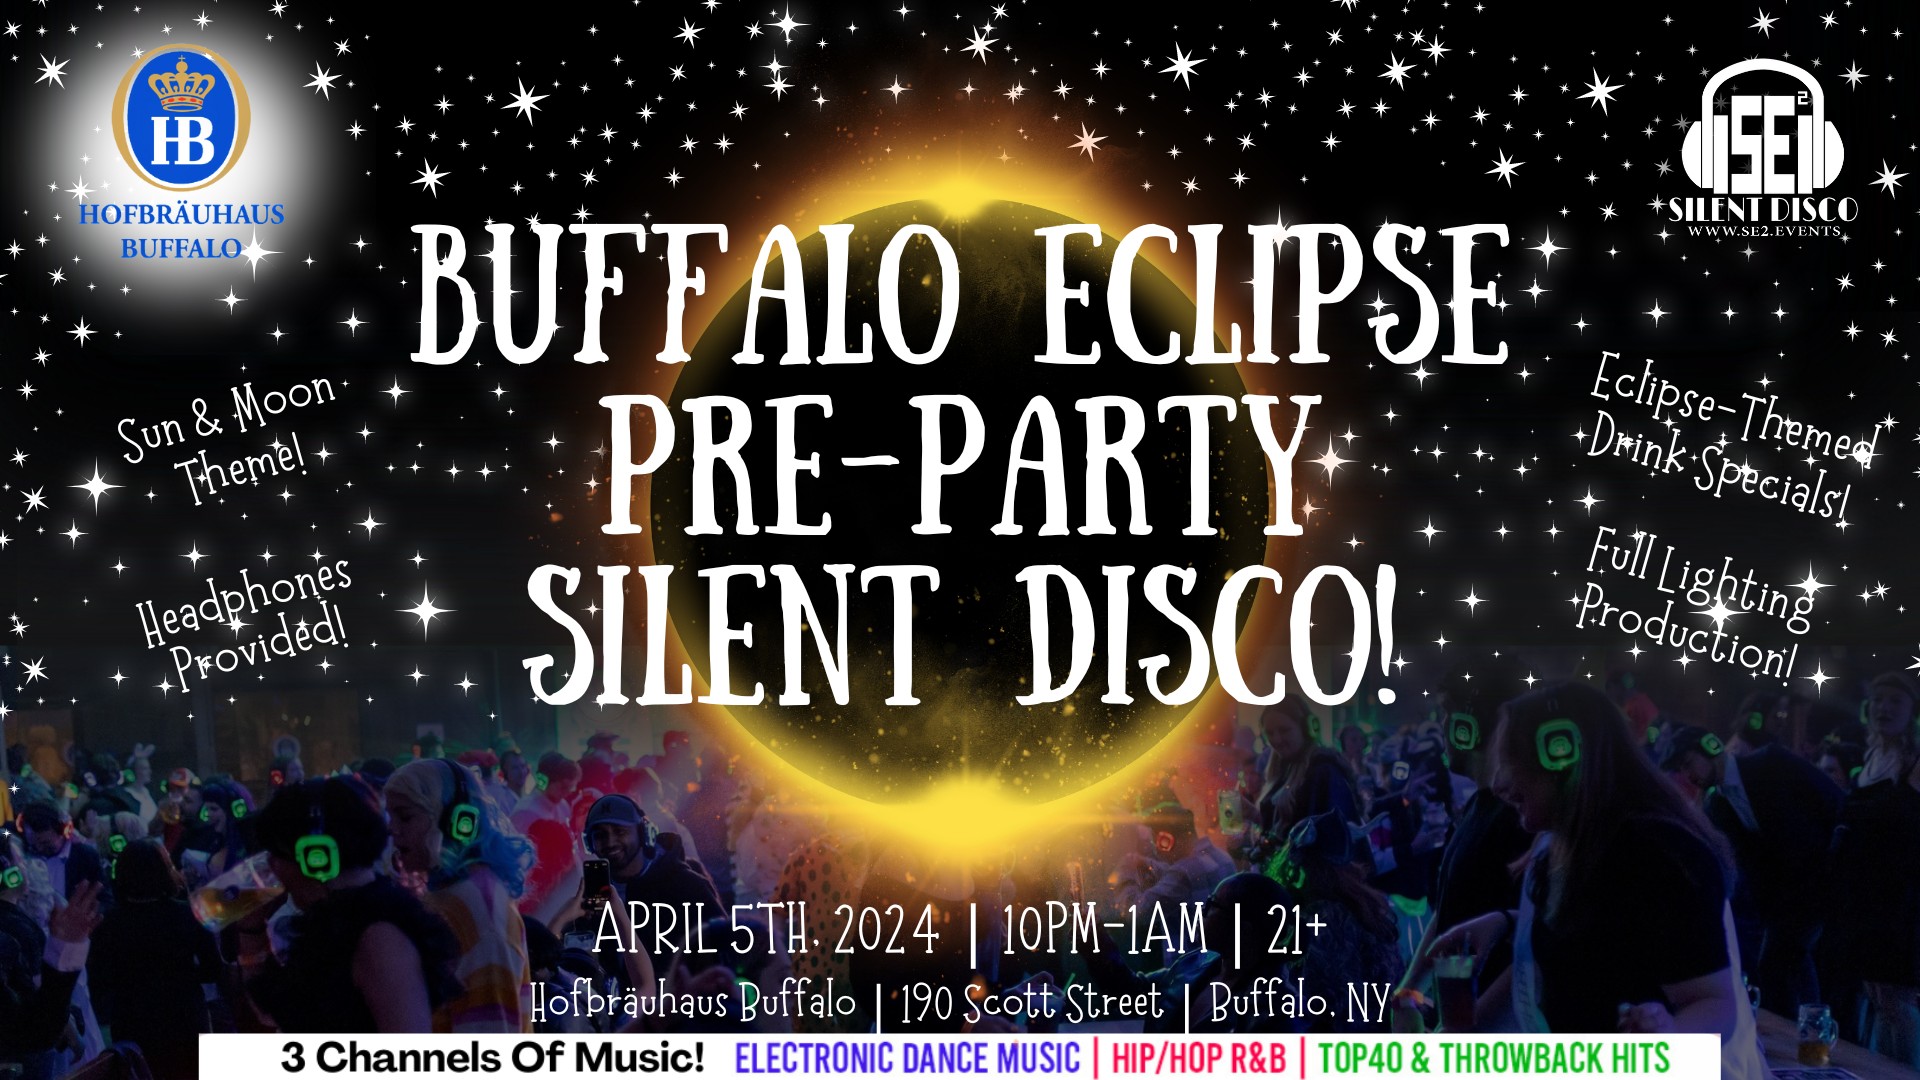 Buffalo Eclipse PreParty Silent Disco